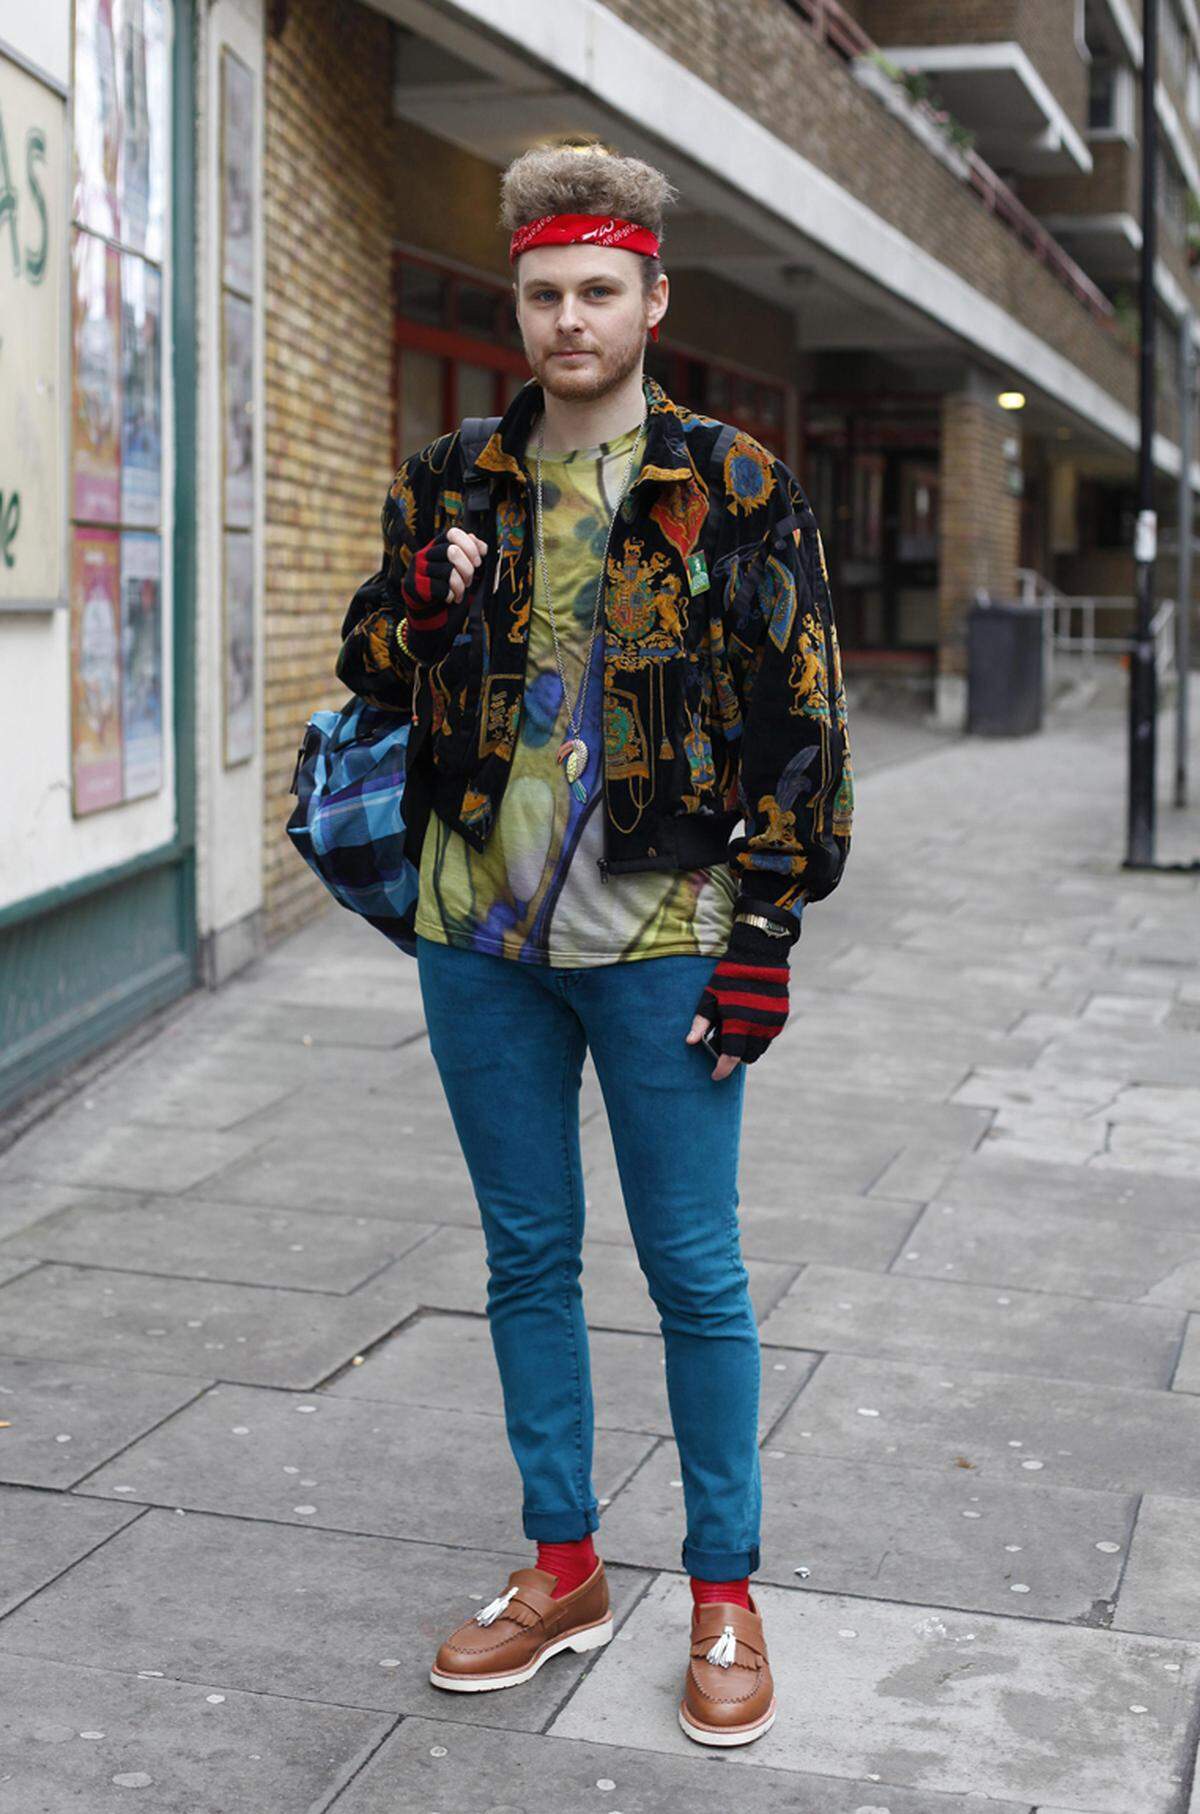 Mustermix, Skinny Jeans, Stirnband und Rucksack. Mode-Blooger Lee Dales nimmt auf den Straßen Londons wohl Anleihen aus der Hipstermode.